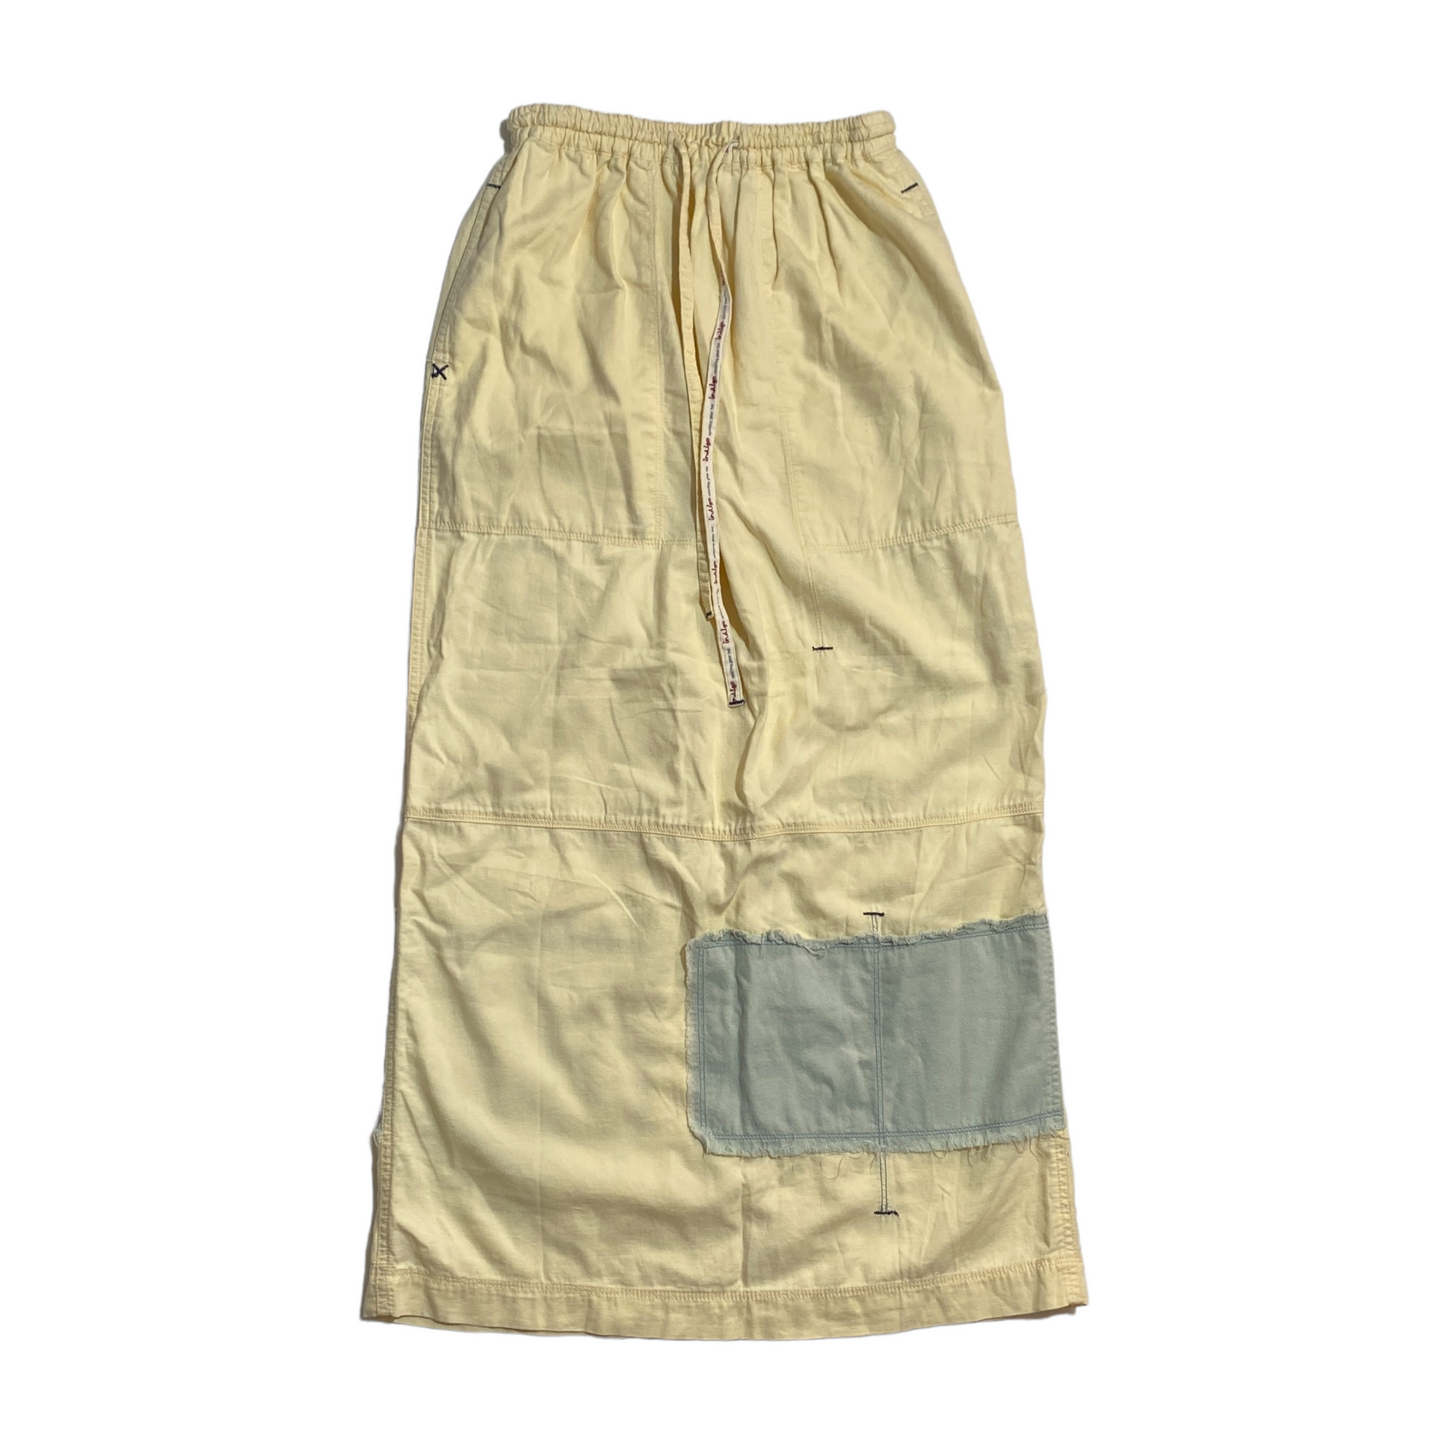 00's Hai Sporting Gear skirt (30-37W)